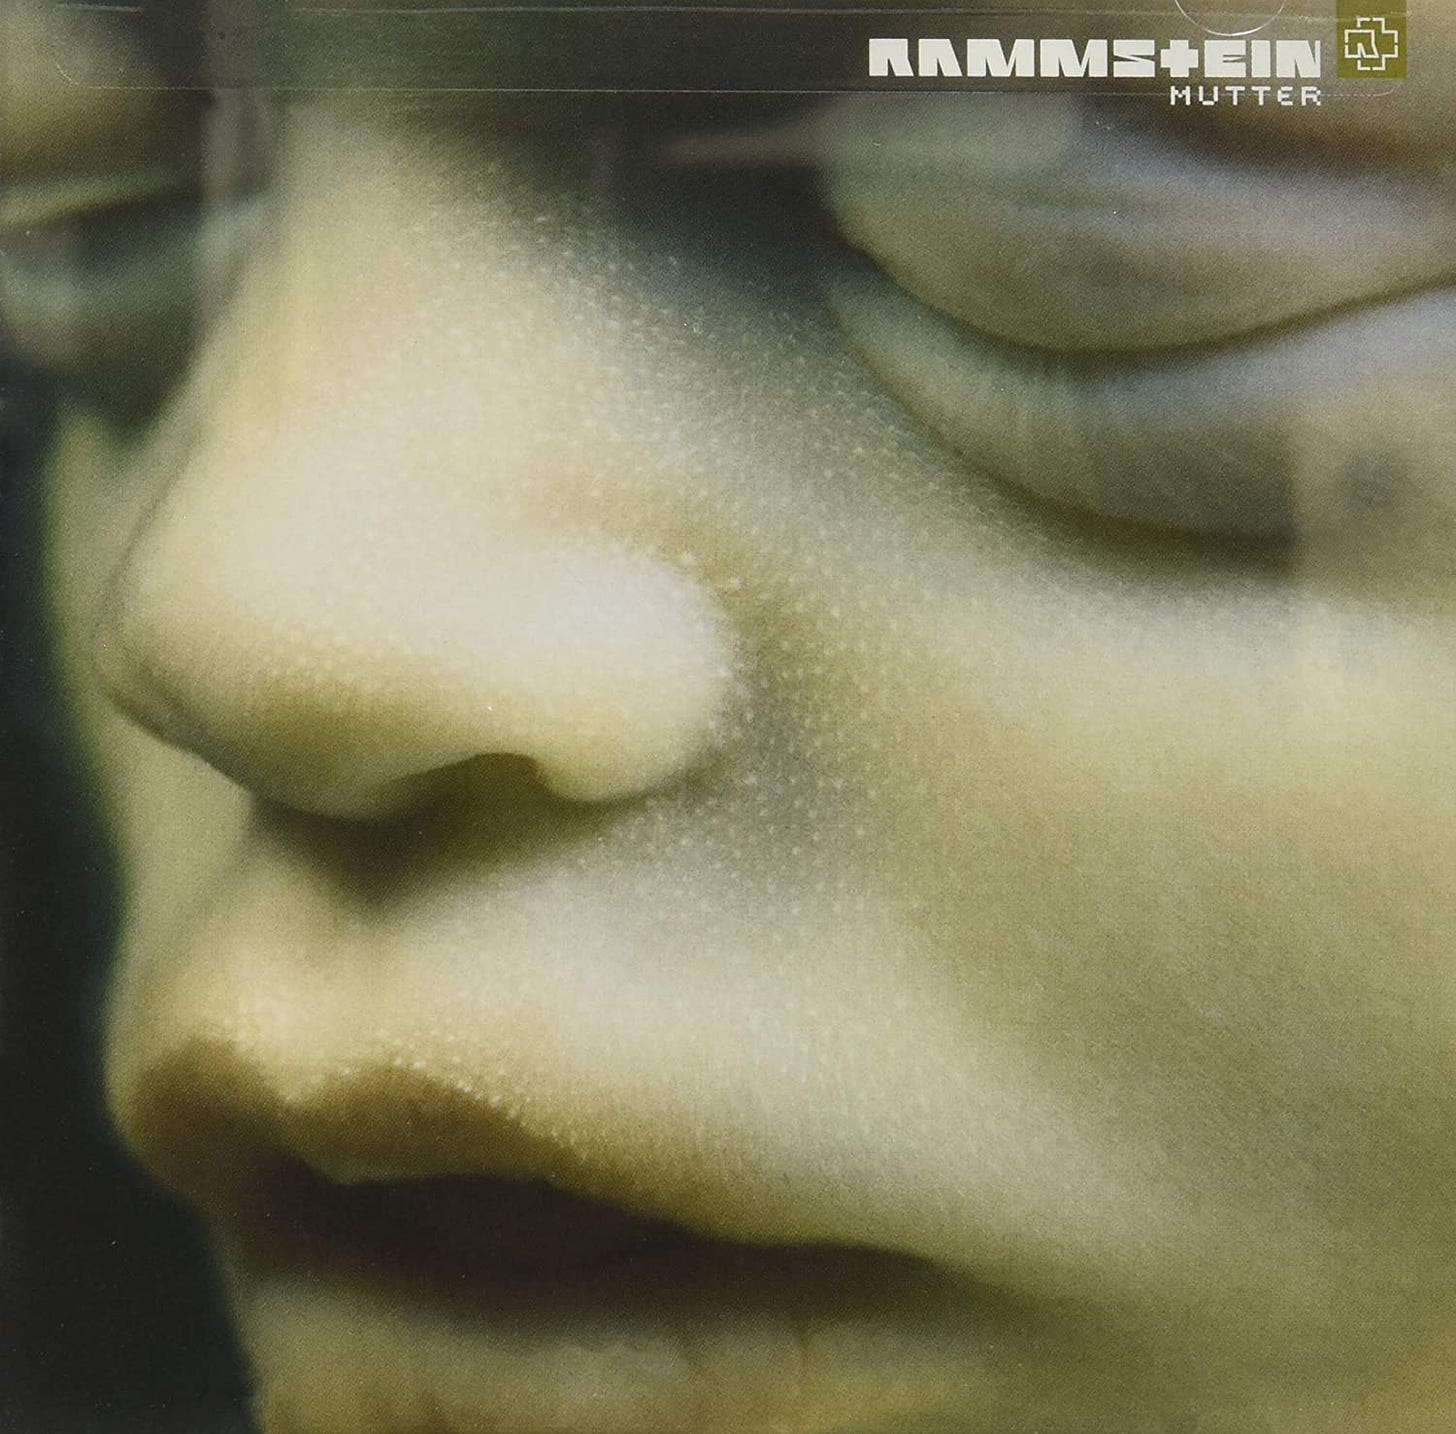 2001) Rammstein – Mutter: Anniversary Special | Tuonela Magazine